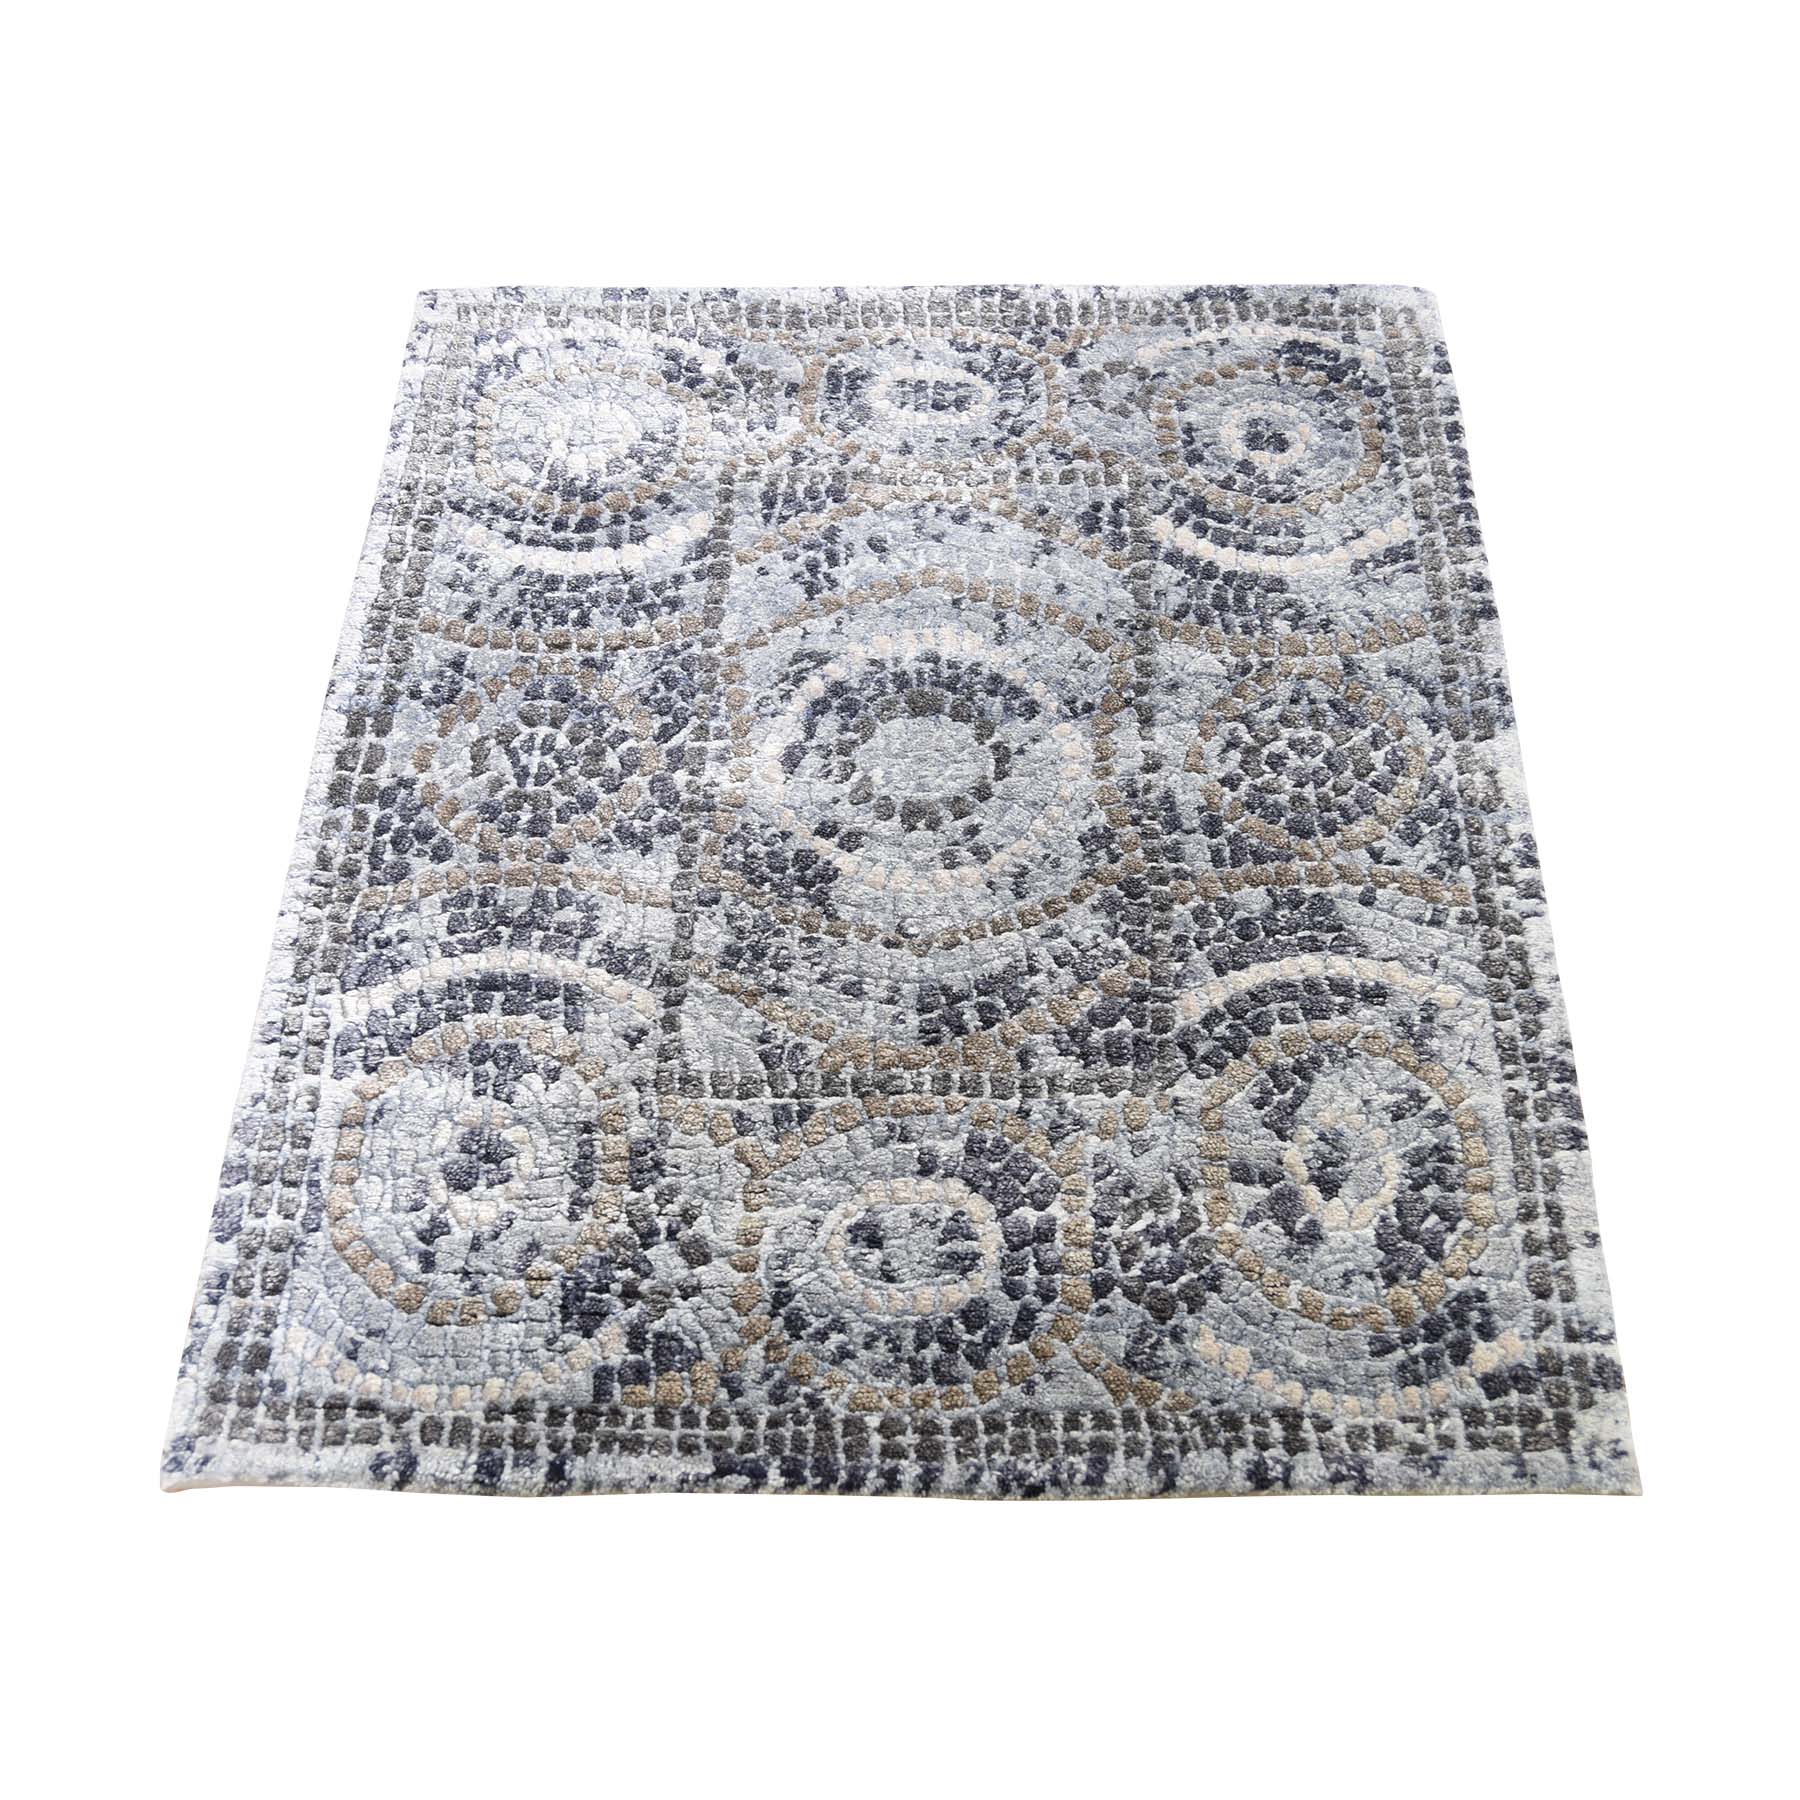 2'2"x2'10" Blue,Ivory Silken Roman Mosaic Design Hand Woven Oriental Rug 